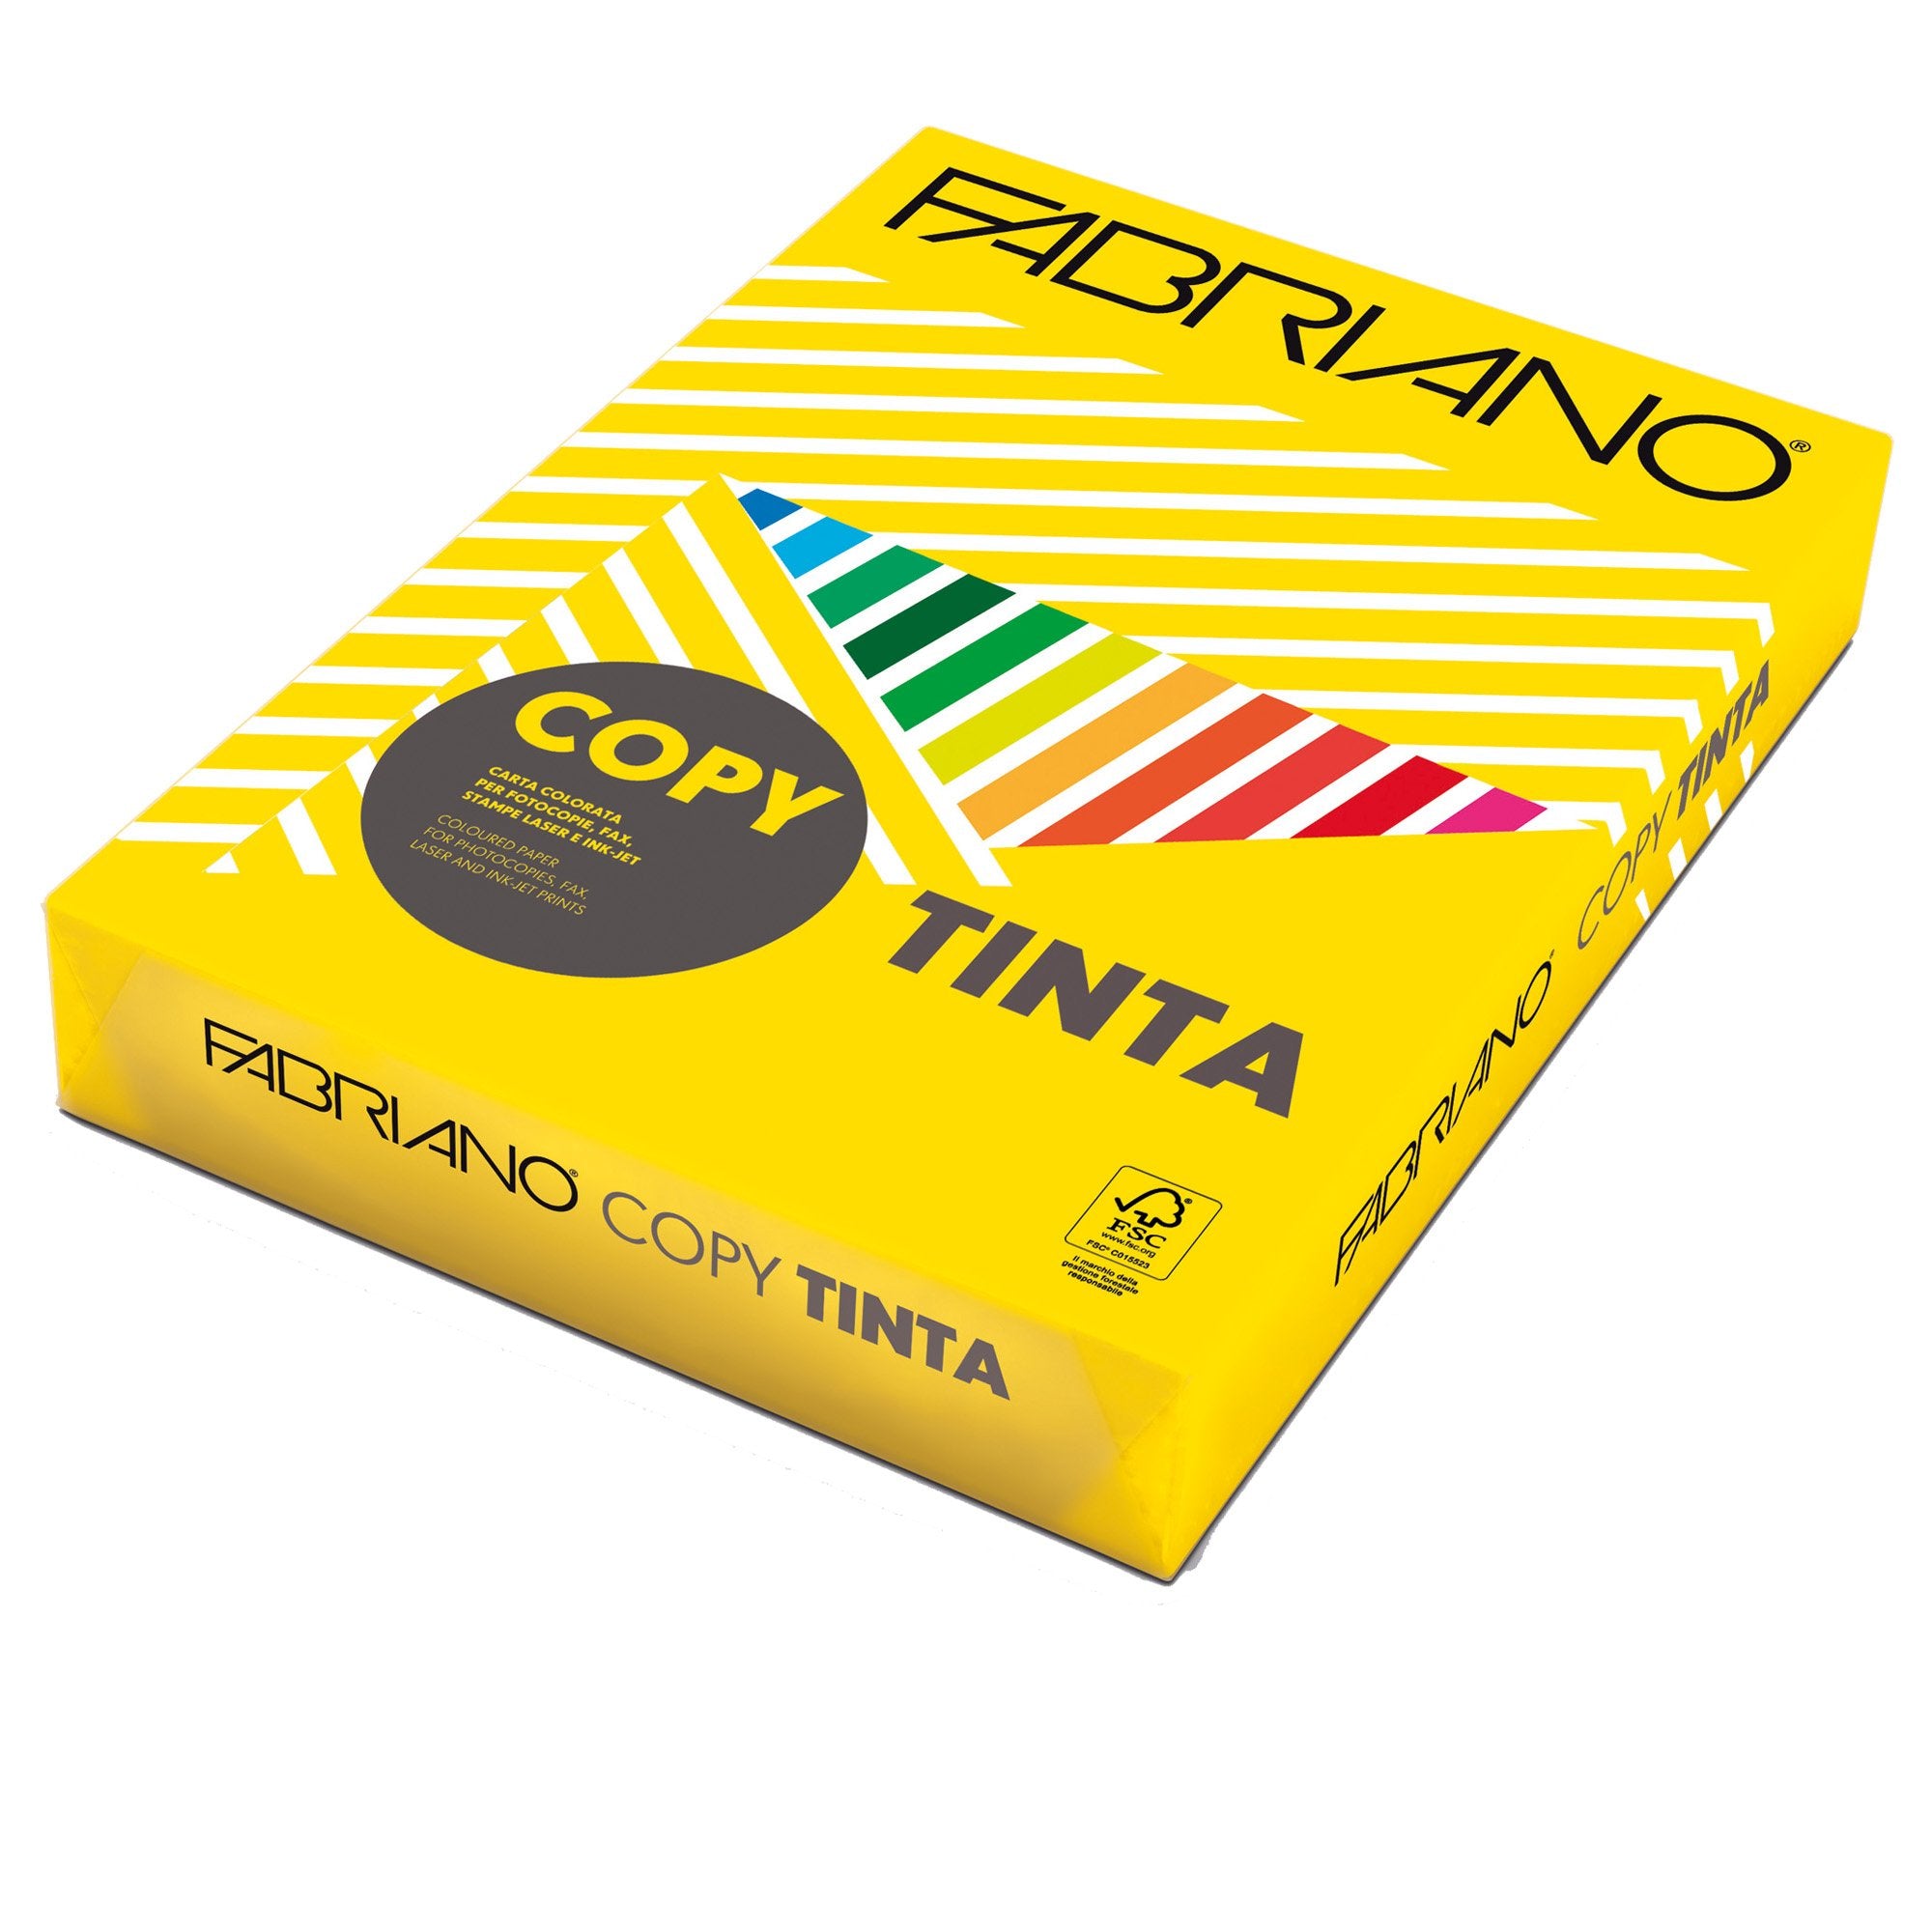 fabriano-carta-copy-tinta-a4-160gr-250fg-col-forti-giallo